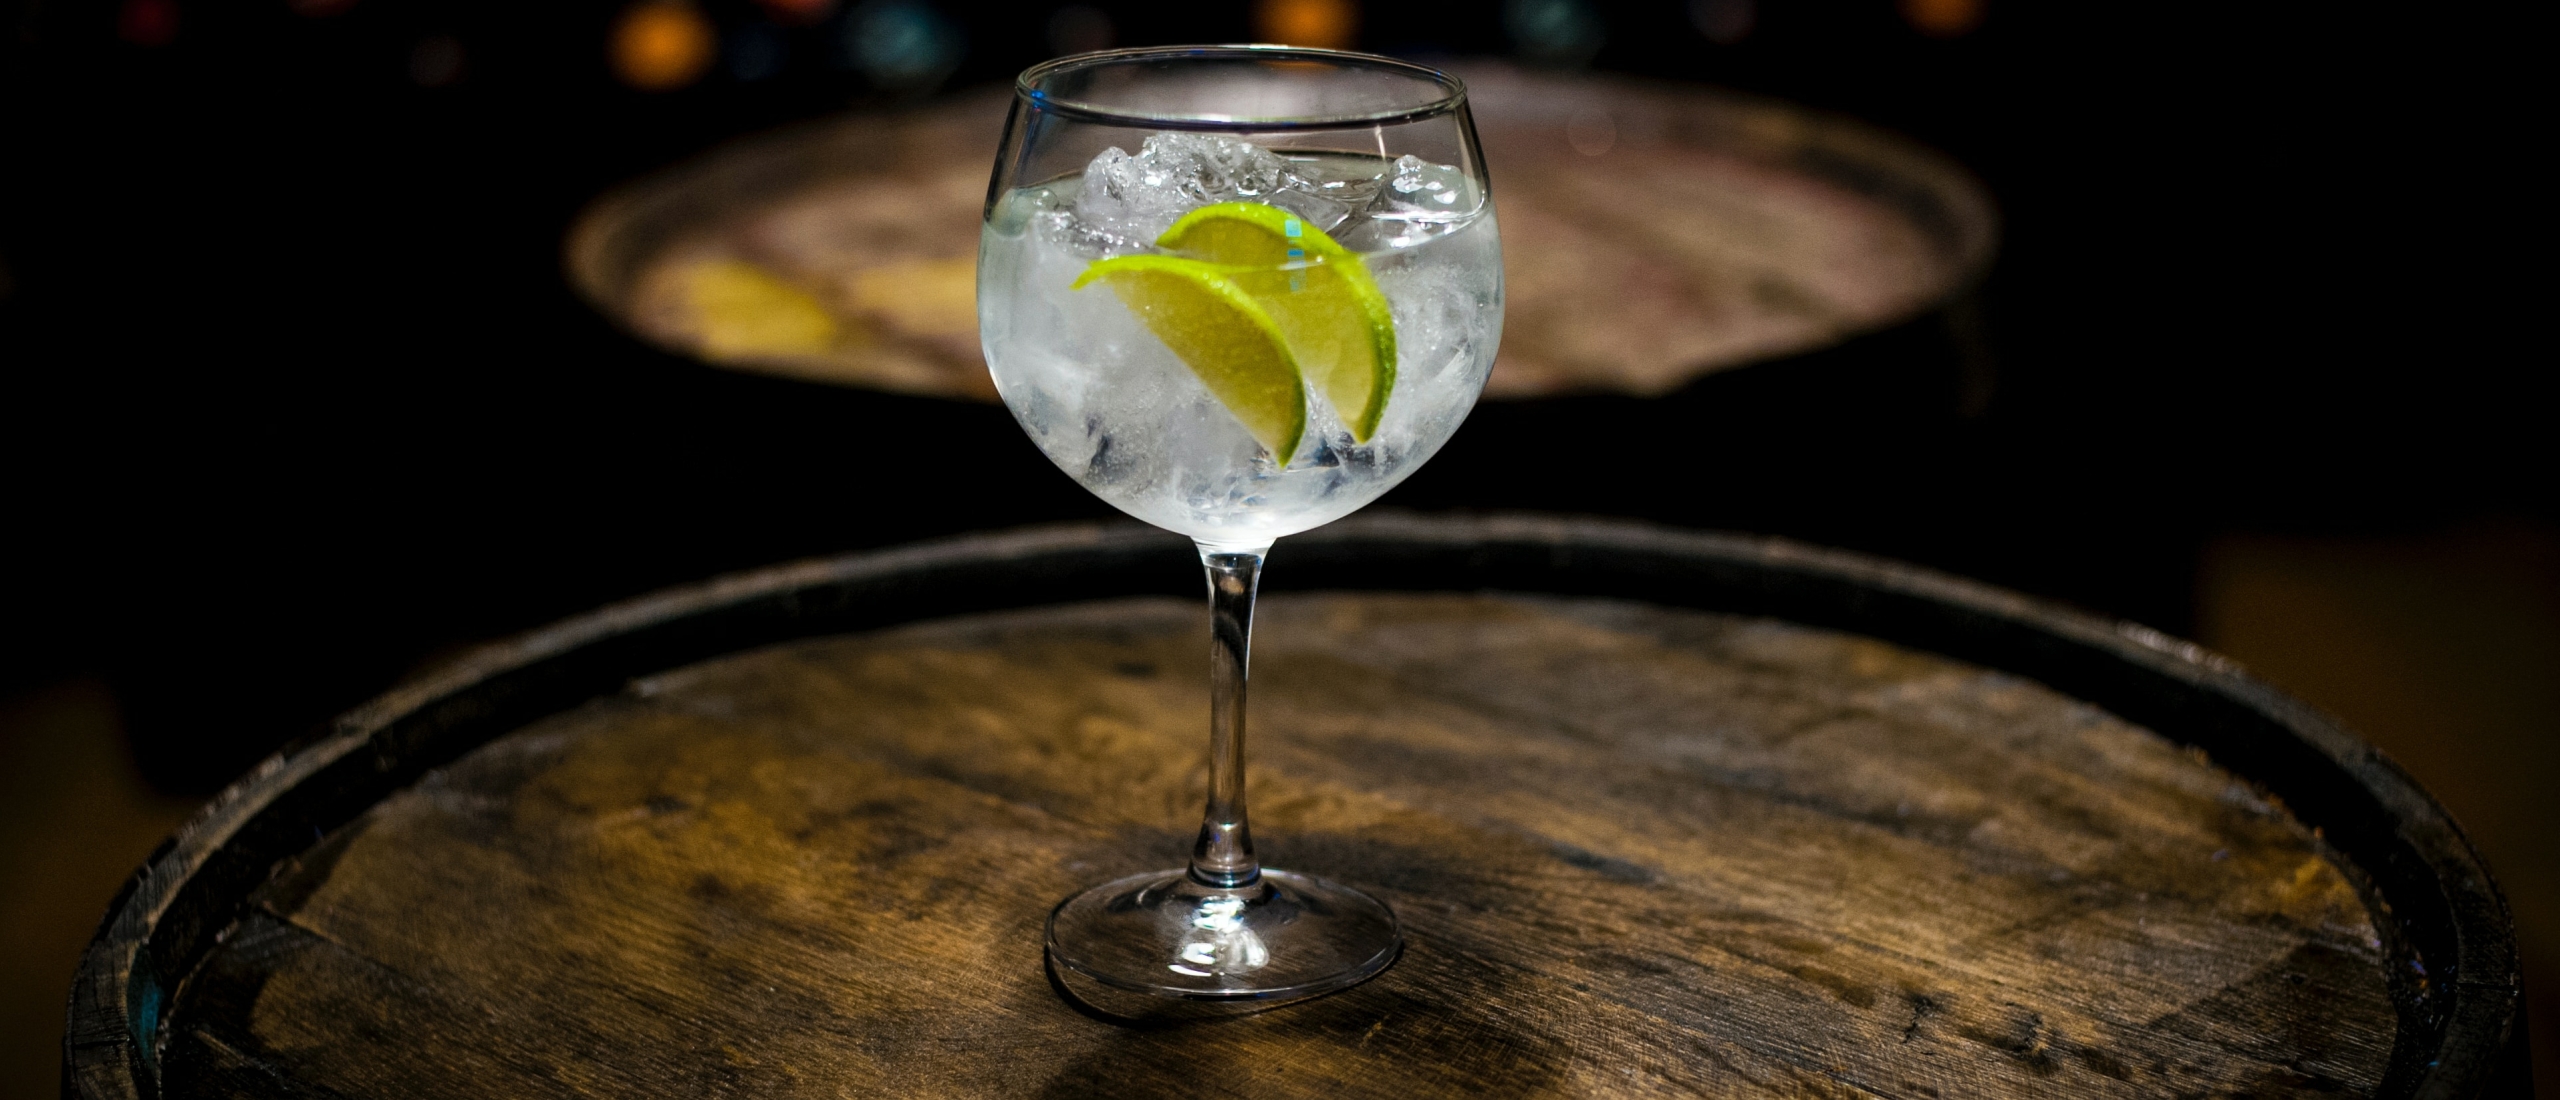 De gin-factor: waarom het loont om oude klantenverhalen uit de kelder te halen